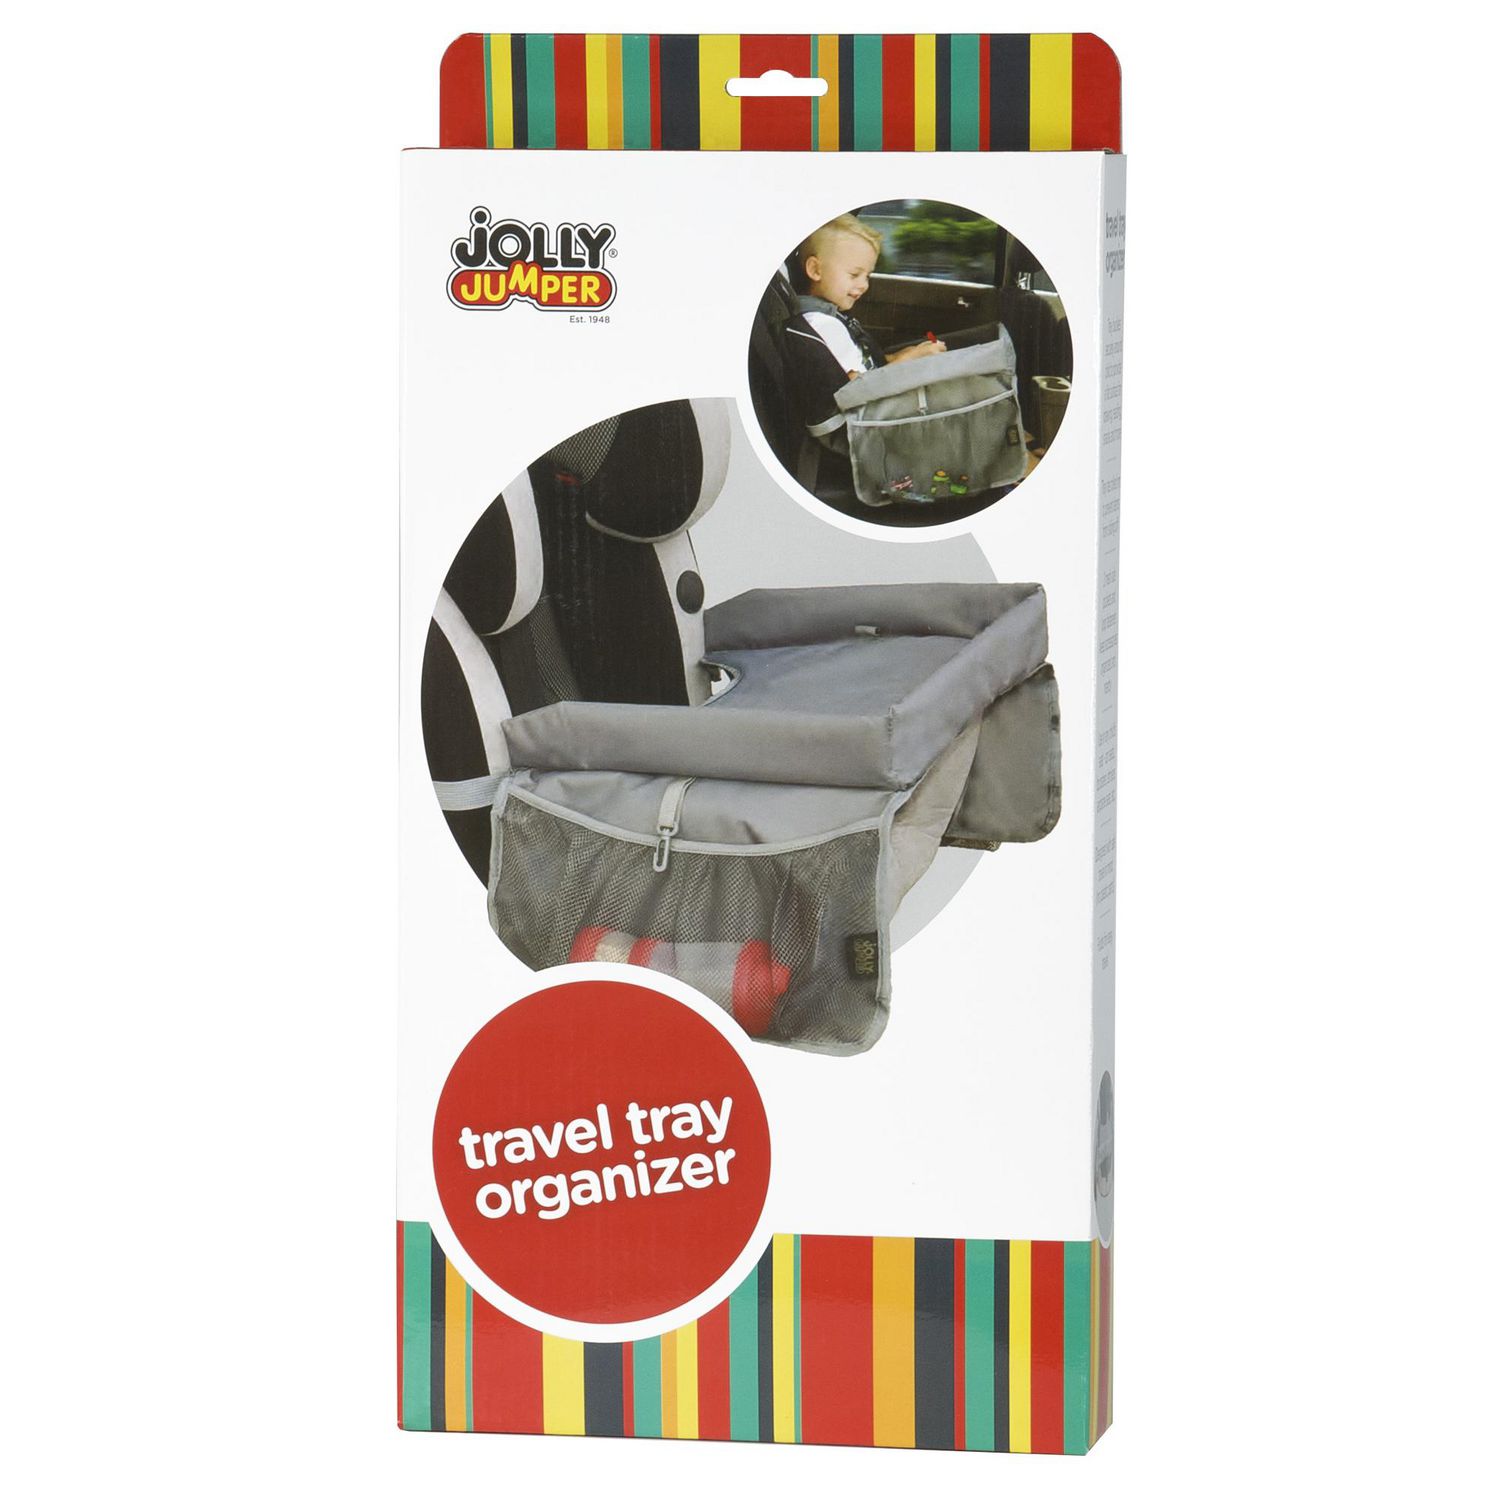 Jolly Jumper Travel Tray Organizer